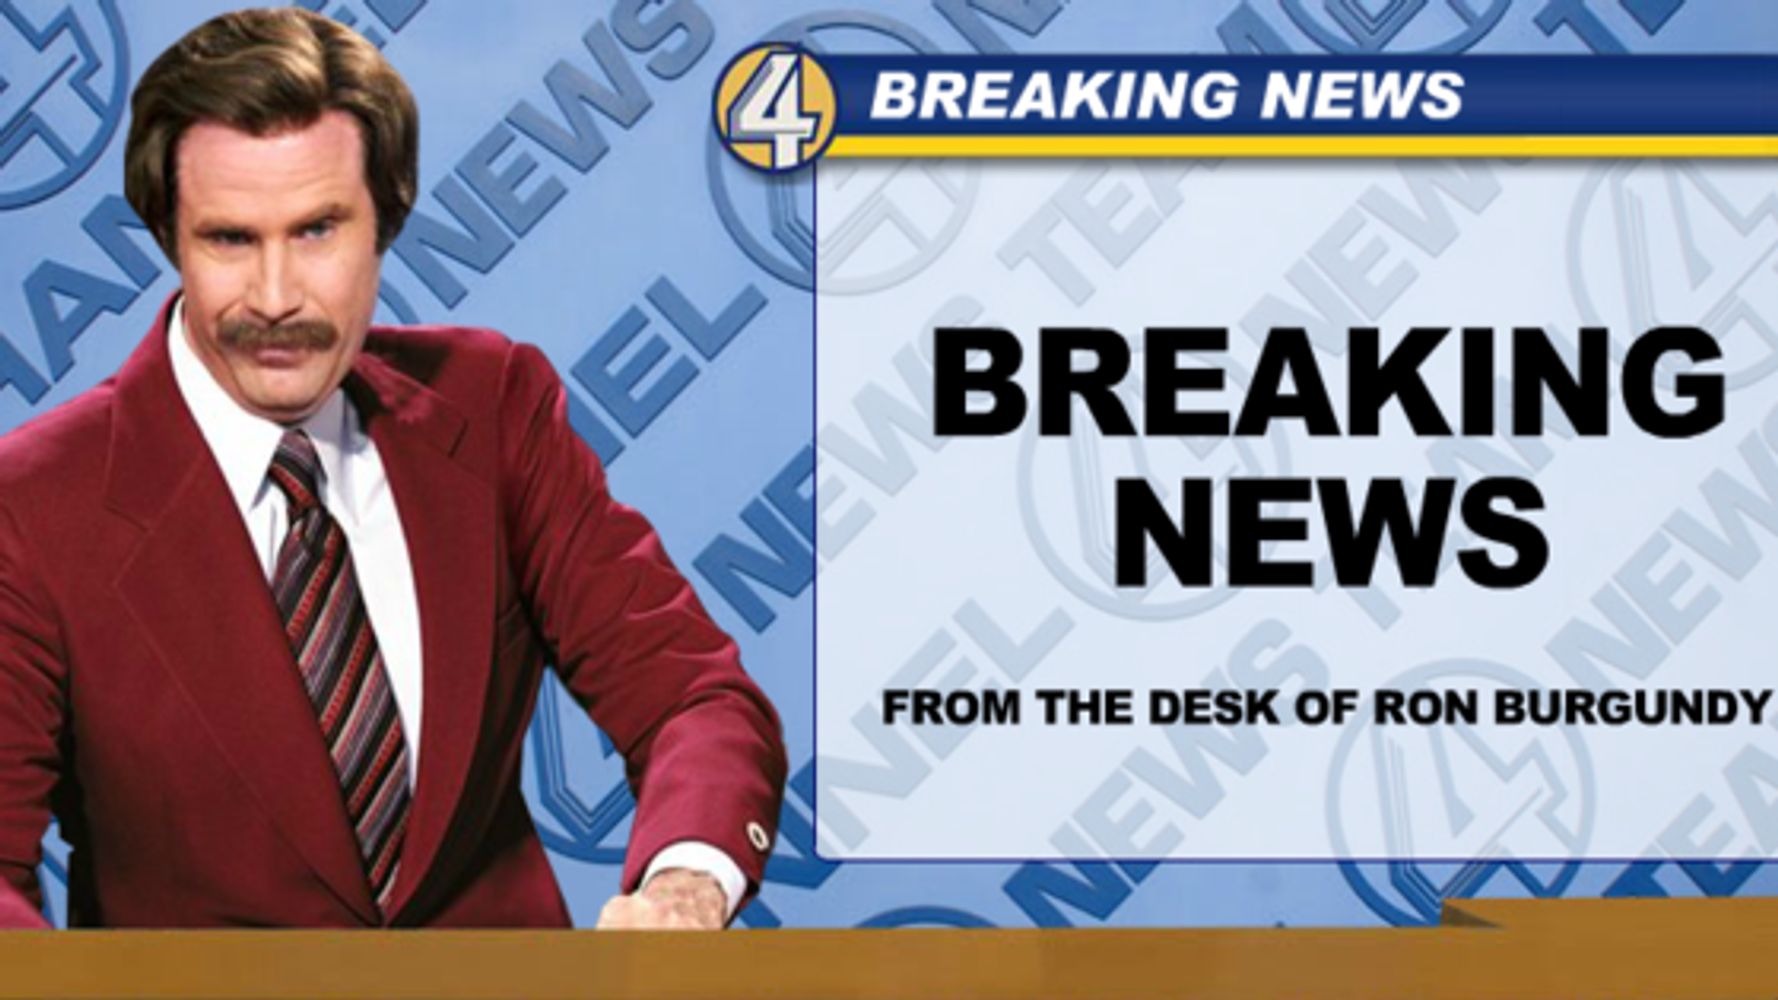 "Breaking News Alert" or Not? HuffPost Latest News